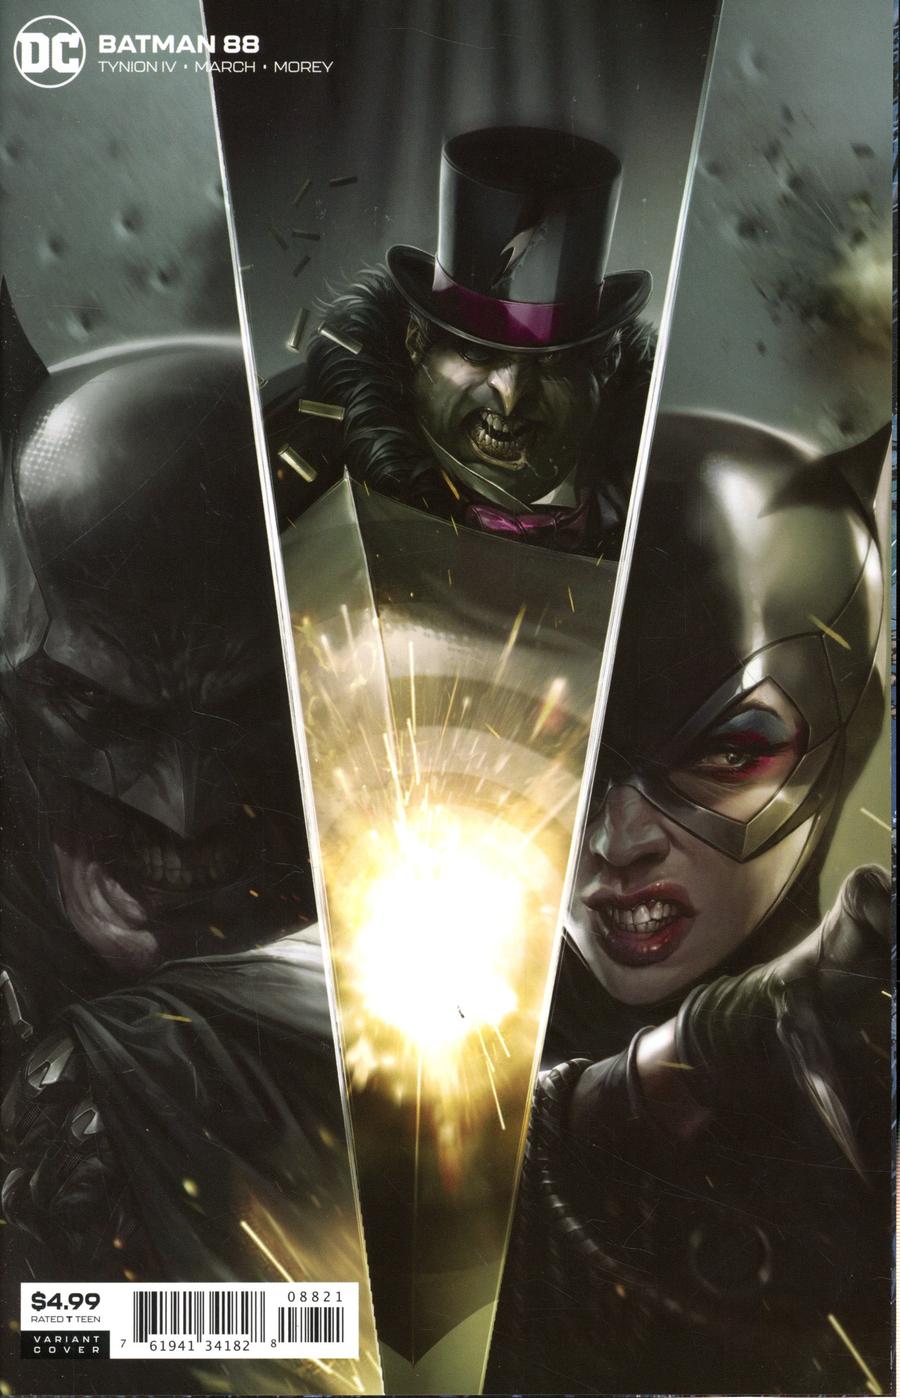 Batman Vol 3 #88 Cover B Variant Francesco Mattina Card Stock Cover